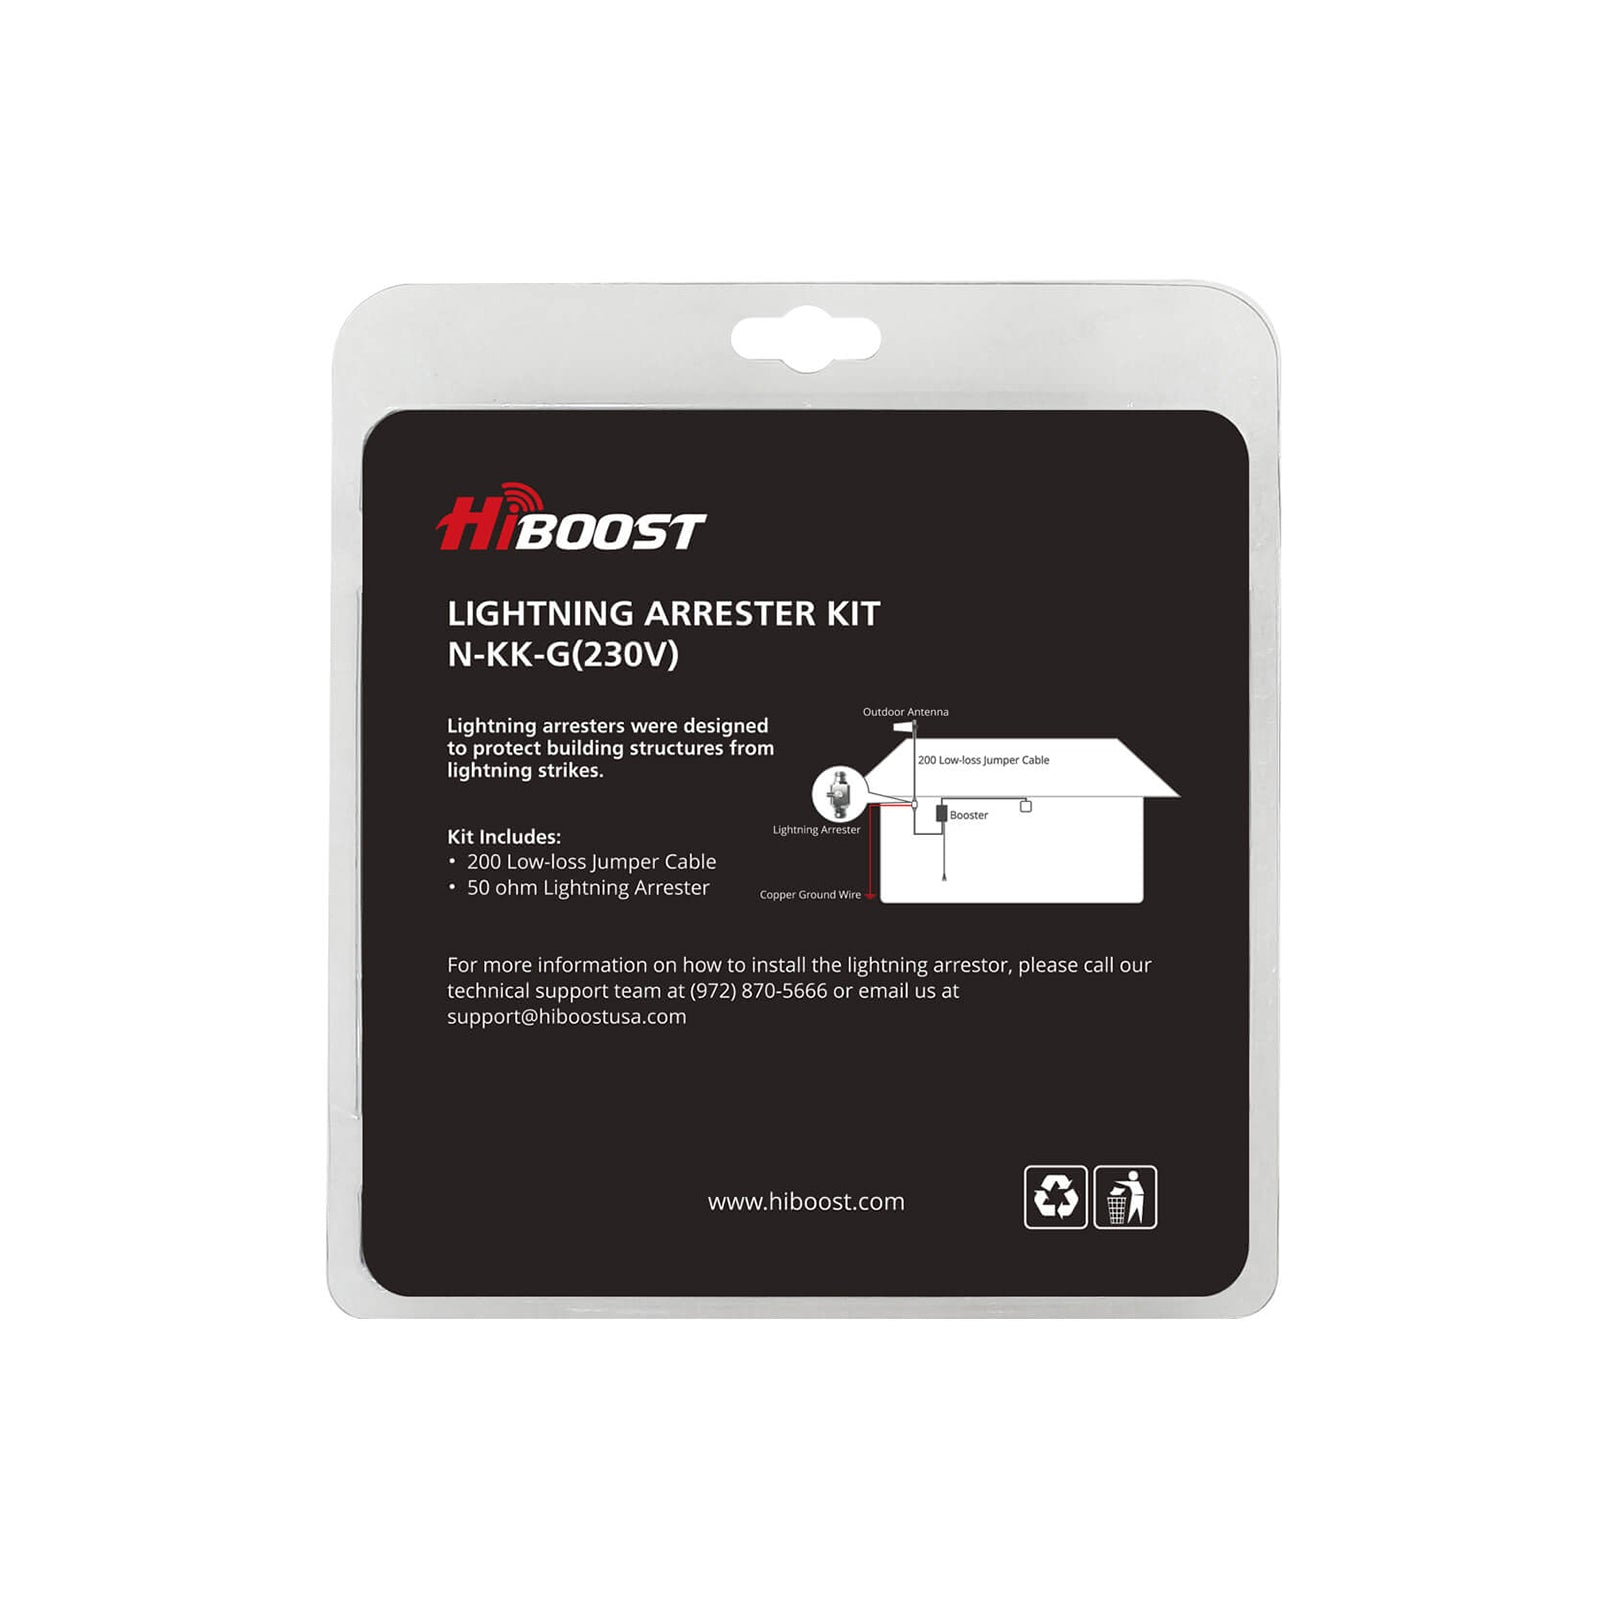 HiBoost Lightning Arrester Kit